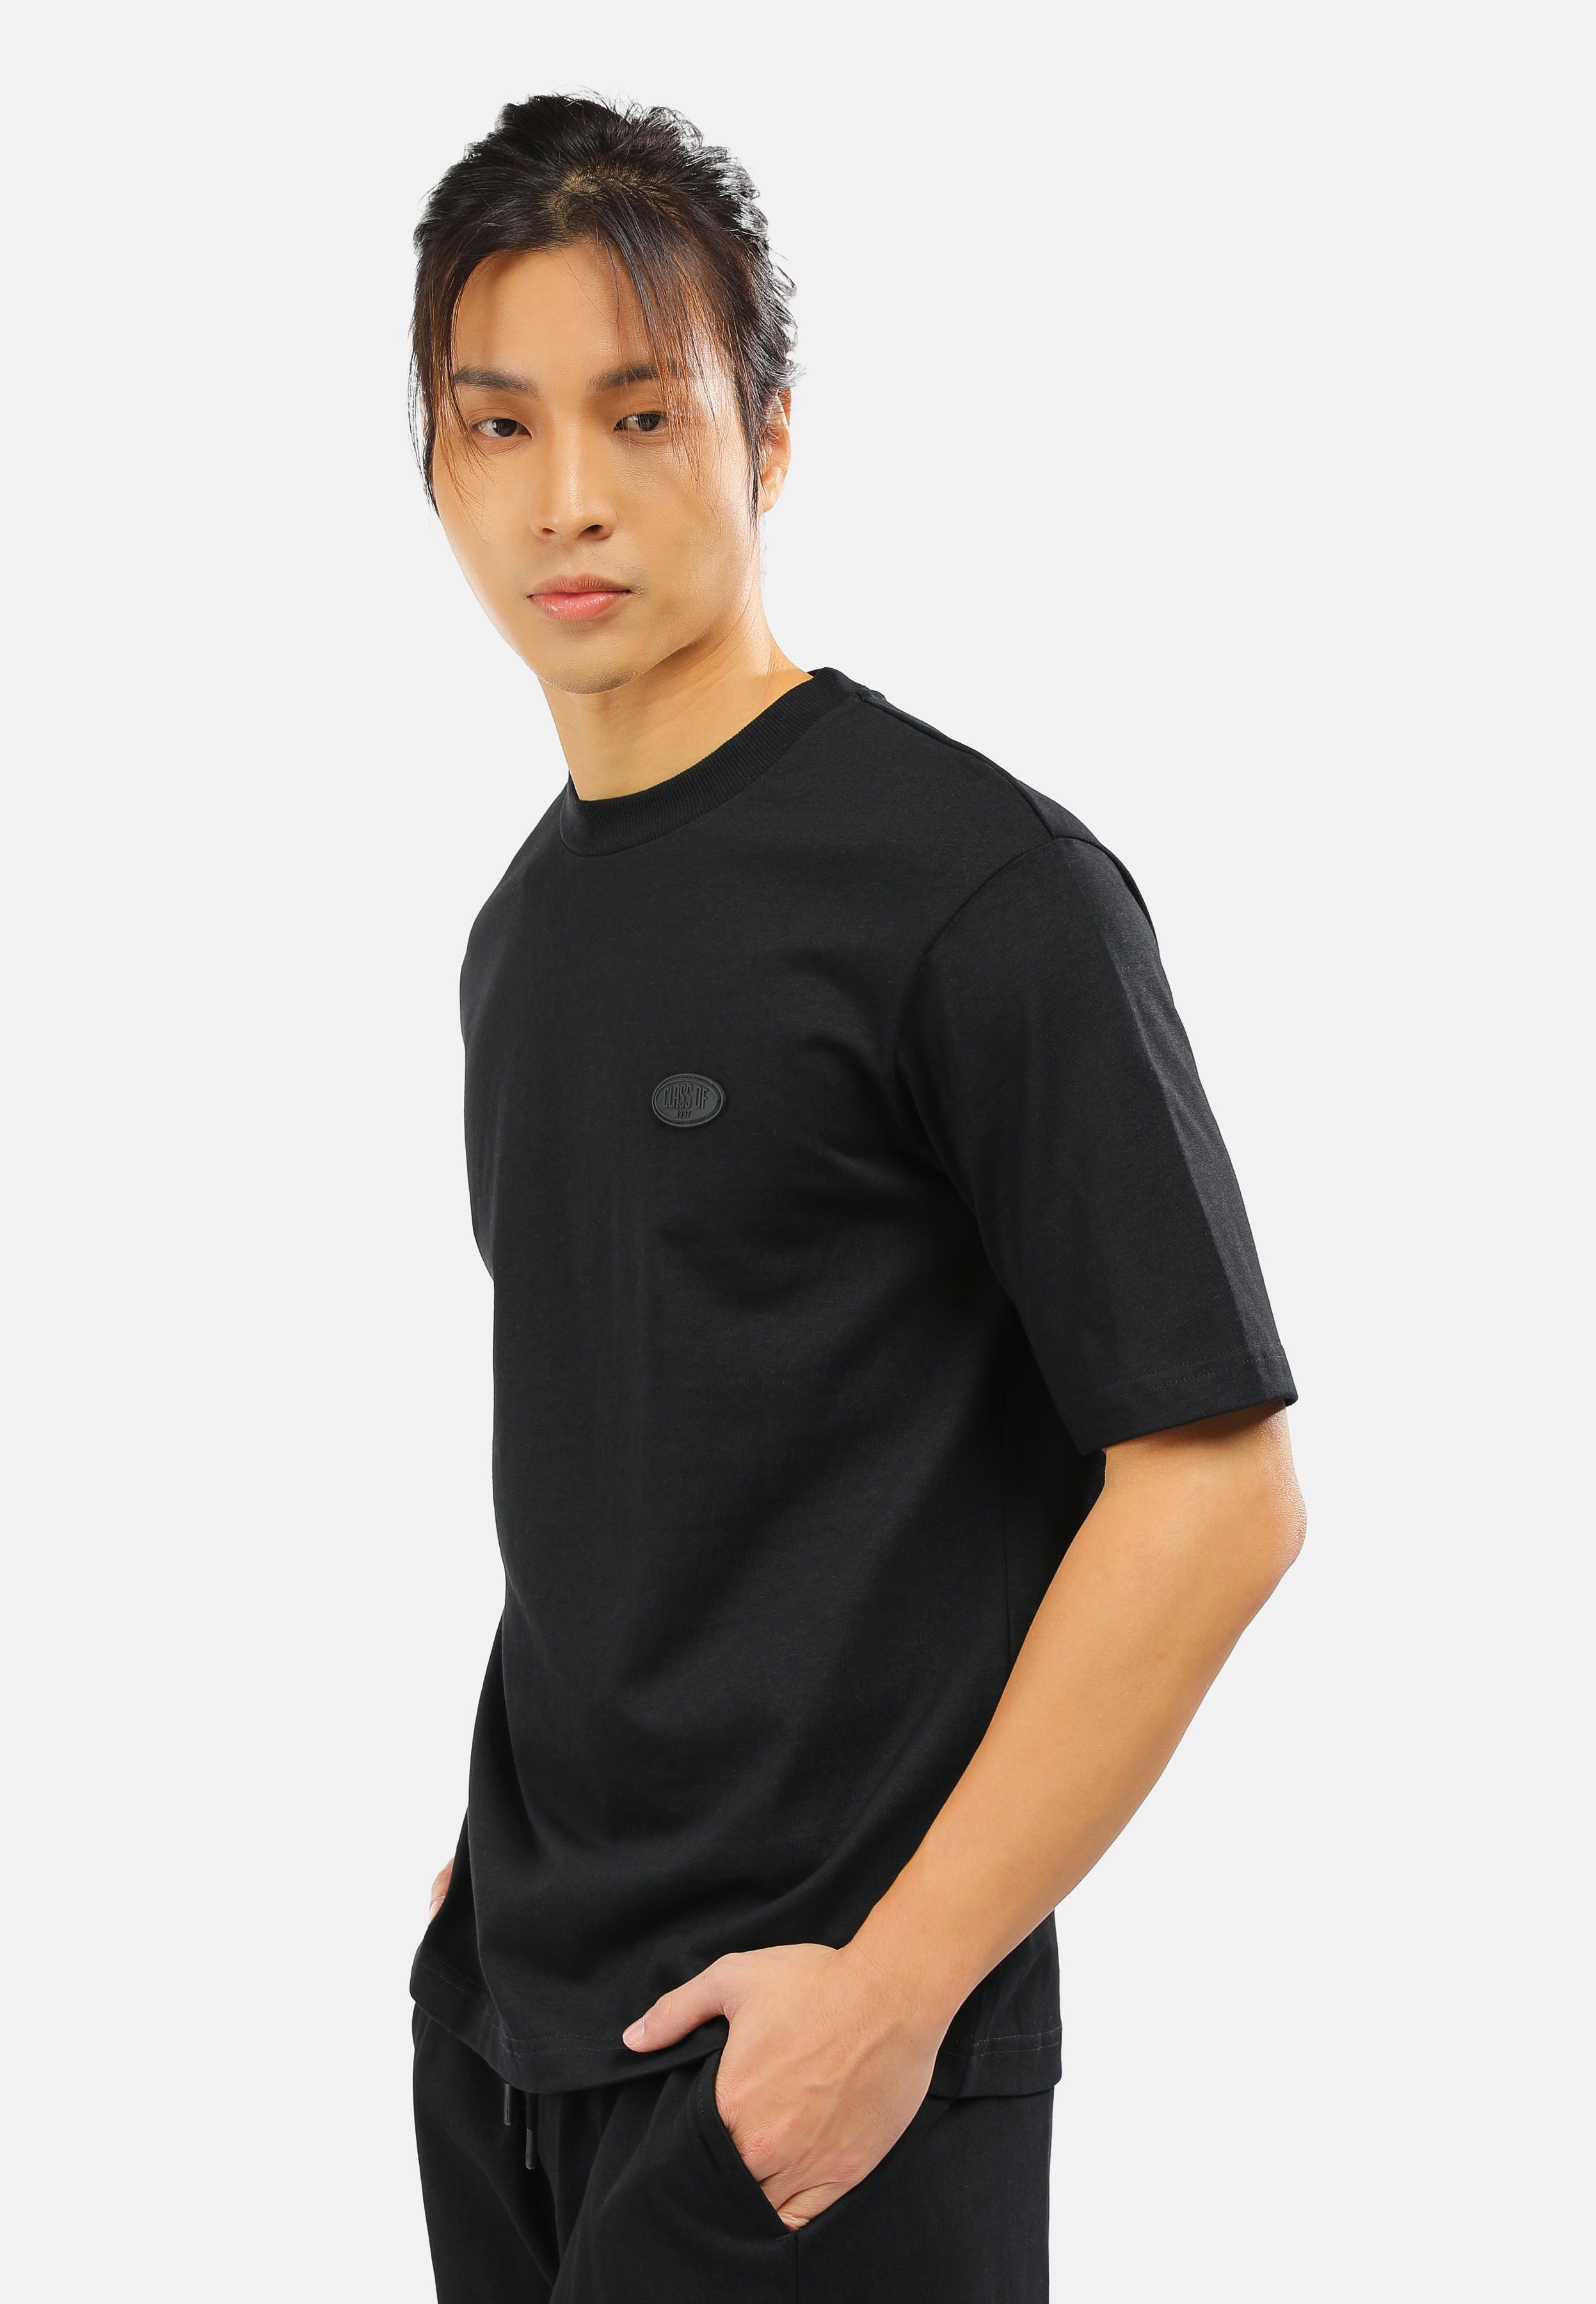 CHEETAH Men Basic Short Sleeves T-Shirt - 99096 (LM)